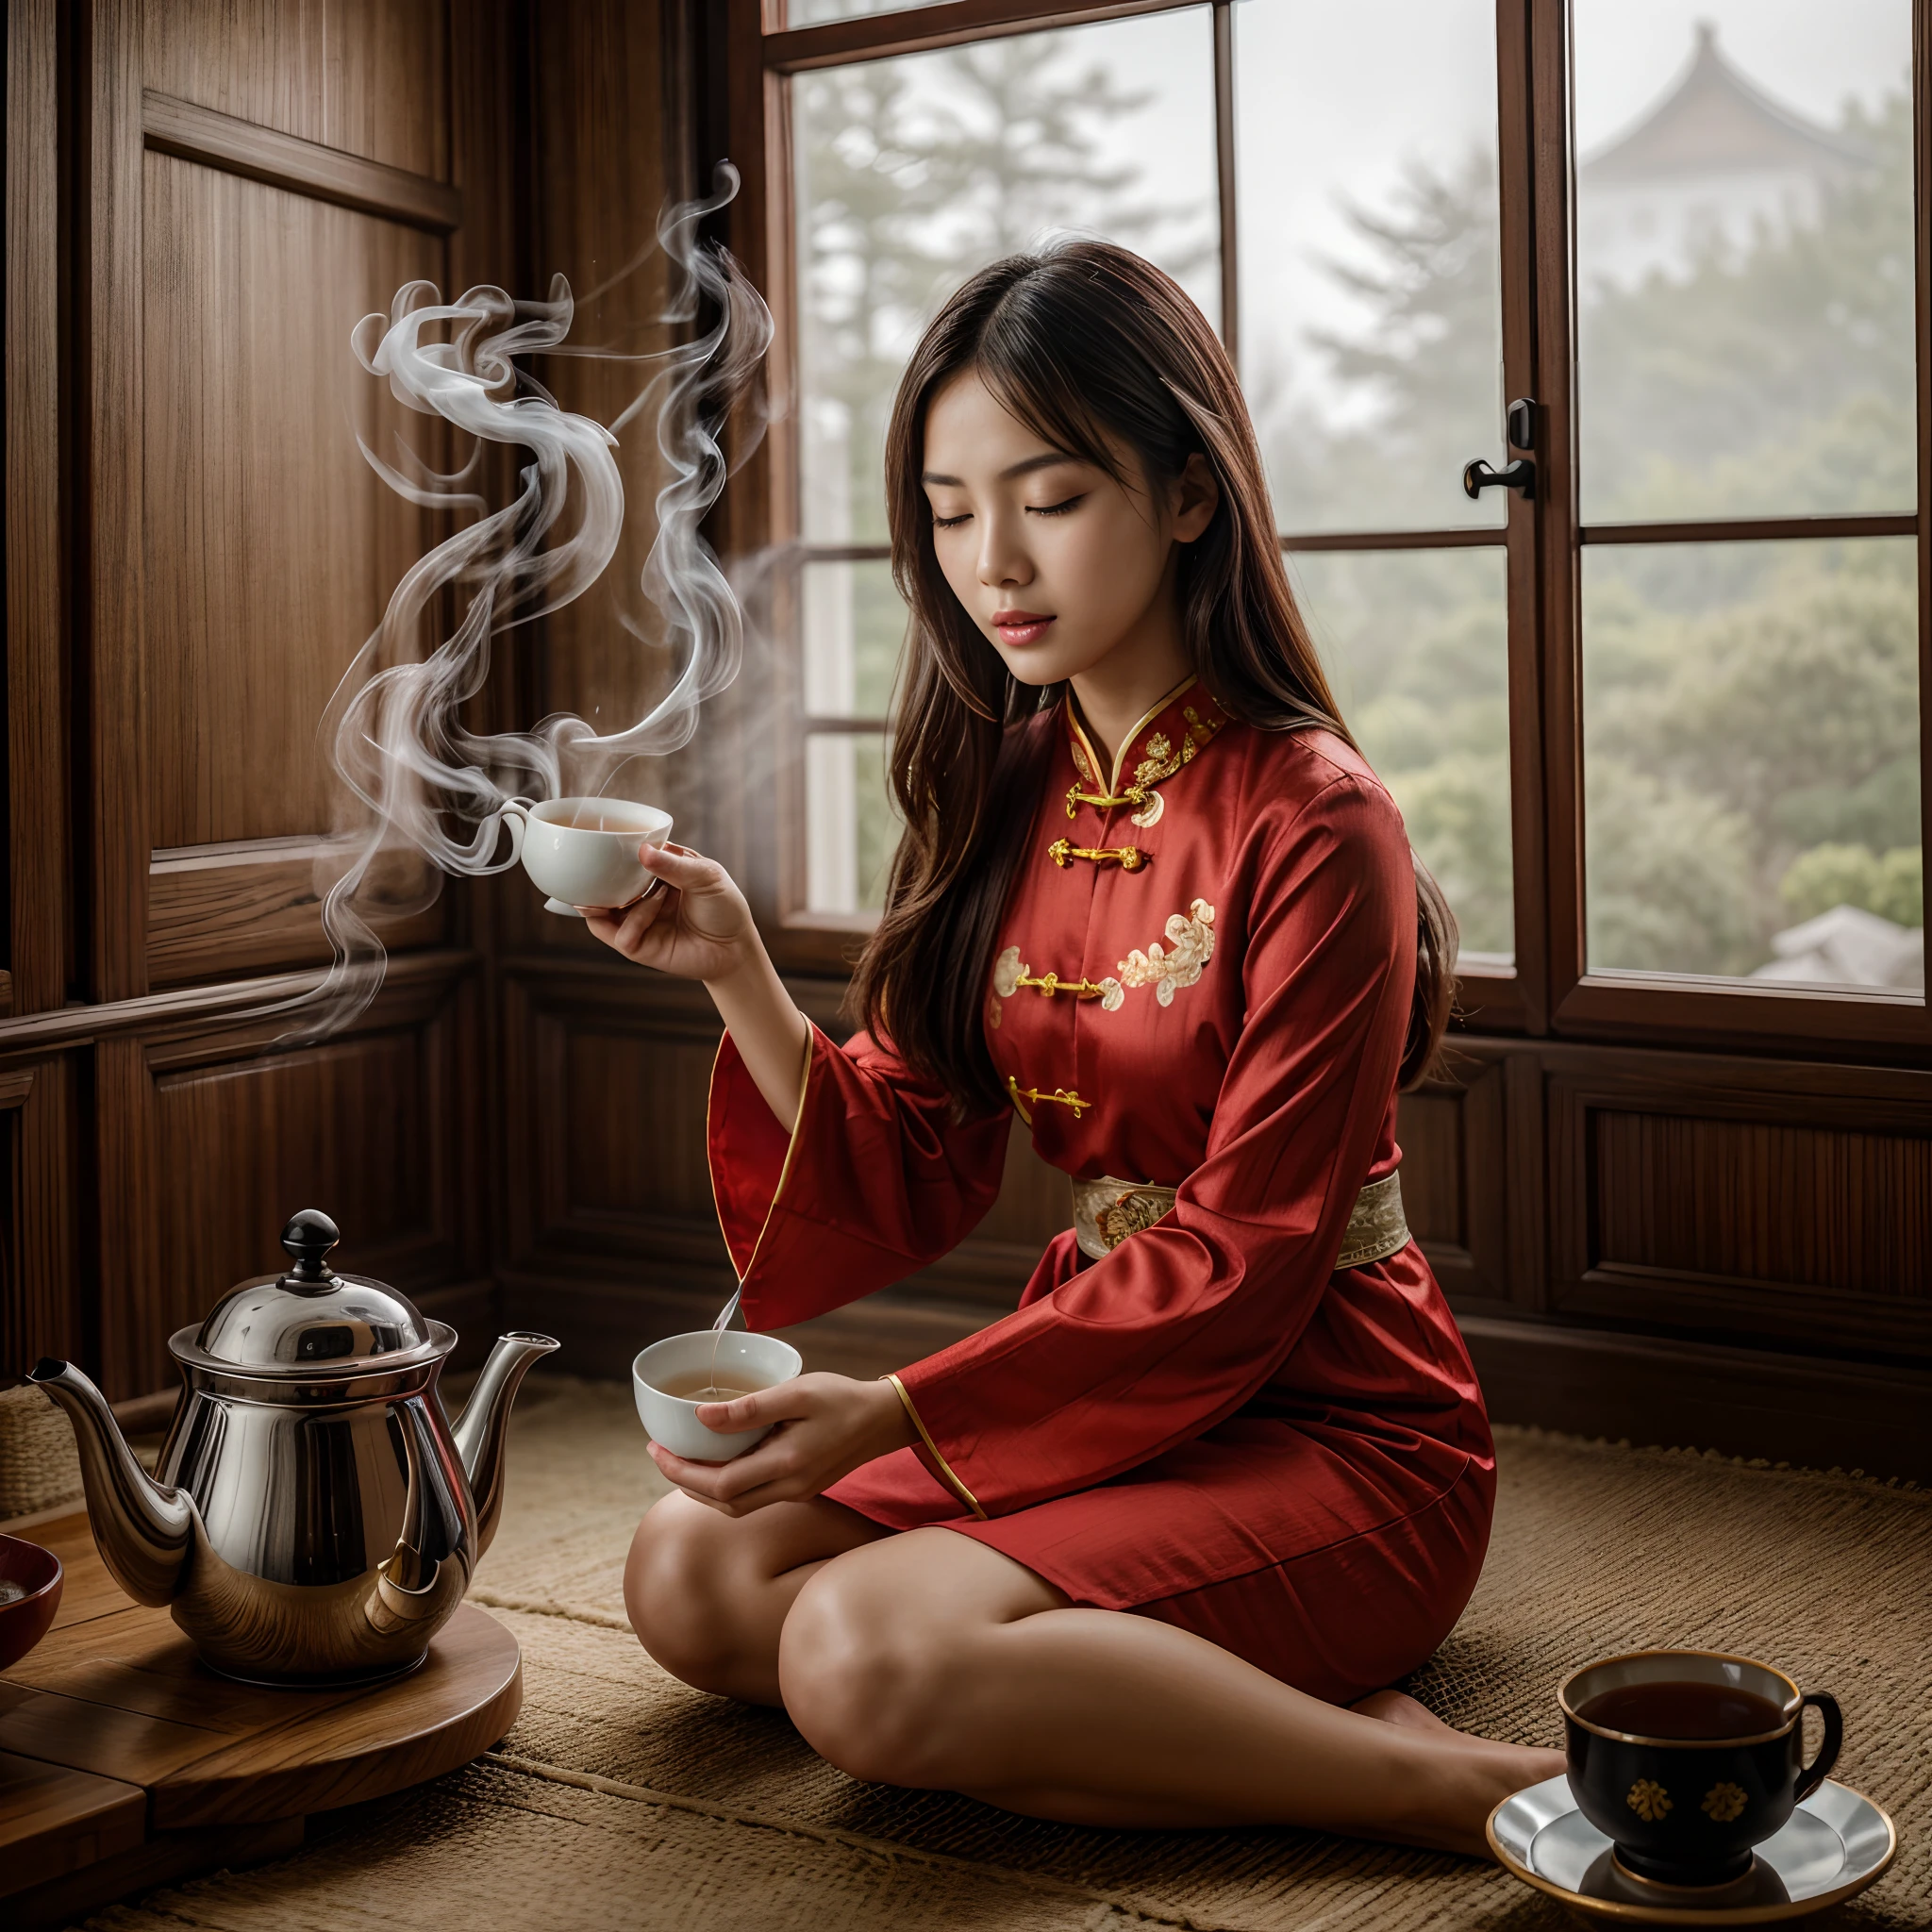 (ผลงานชิ้นเอก, คุณภาพดีที่สุด), 1สาว, เต็มตัว, ใบหน้า, เท้า, ภาพสารคดีสาวจีนสวมชุดจีนแบบดั้งเดิมที่มีความตั้งใจในพิธีชงชา. เธอเทชานึ่งลงในถ้วยจากกาน้ำชา. ห้องจีนโบราณทั่วไป, ควันในอากาศ, แสงกระจายมาก, การเคลื่อนไหวทางราคะ, สีเขียว_ดวงตา, ริมฝีปากสีแดง, อ้าปากเล็กน้อย, closed ดวงตา, แสงอ่อน, ภาพถ่ายความละเอียดสูง, มีรายละเอียดสูง, (ผิวที่มีรายละเอียดสูง:1.2), 16ก, รายละเอียดสูง. ความละเอียดสูงพิเศษ.เหมือนจริง:1.4, ยูเอชดี, DSLR, แสงอ่อนing, คุณภาพสูง, ฟิล์มสีเกรน, FujifilmXT3, มุมมองมุมต่ำ